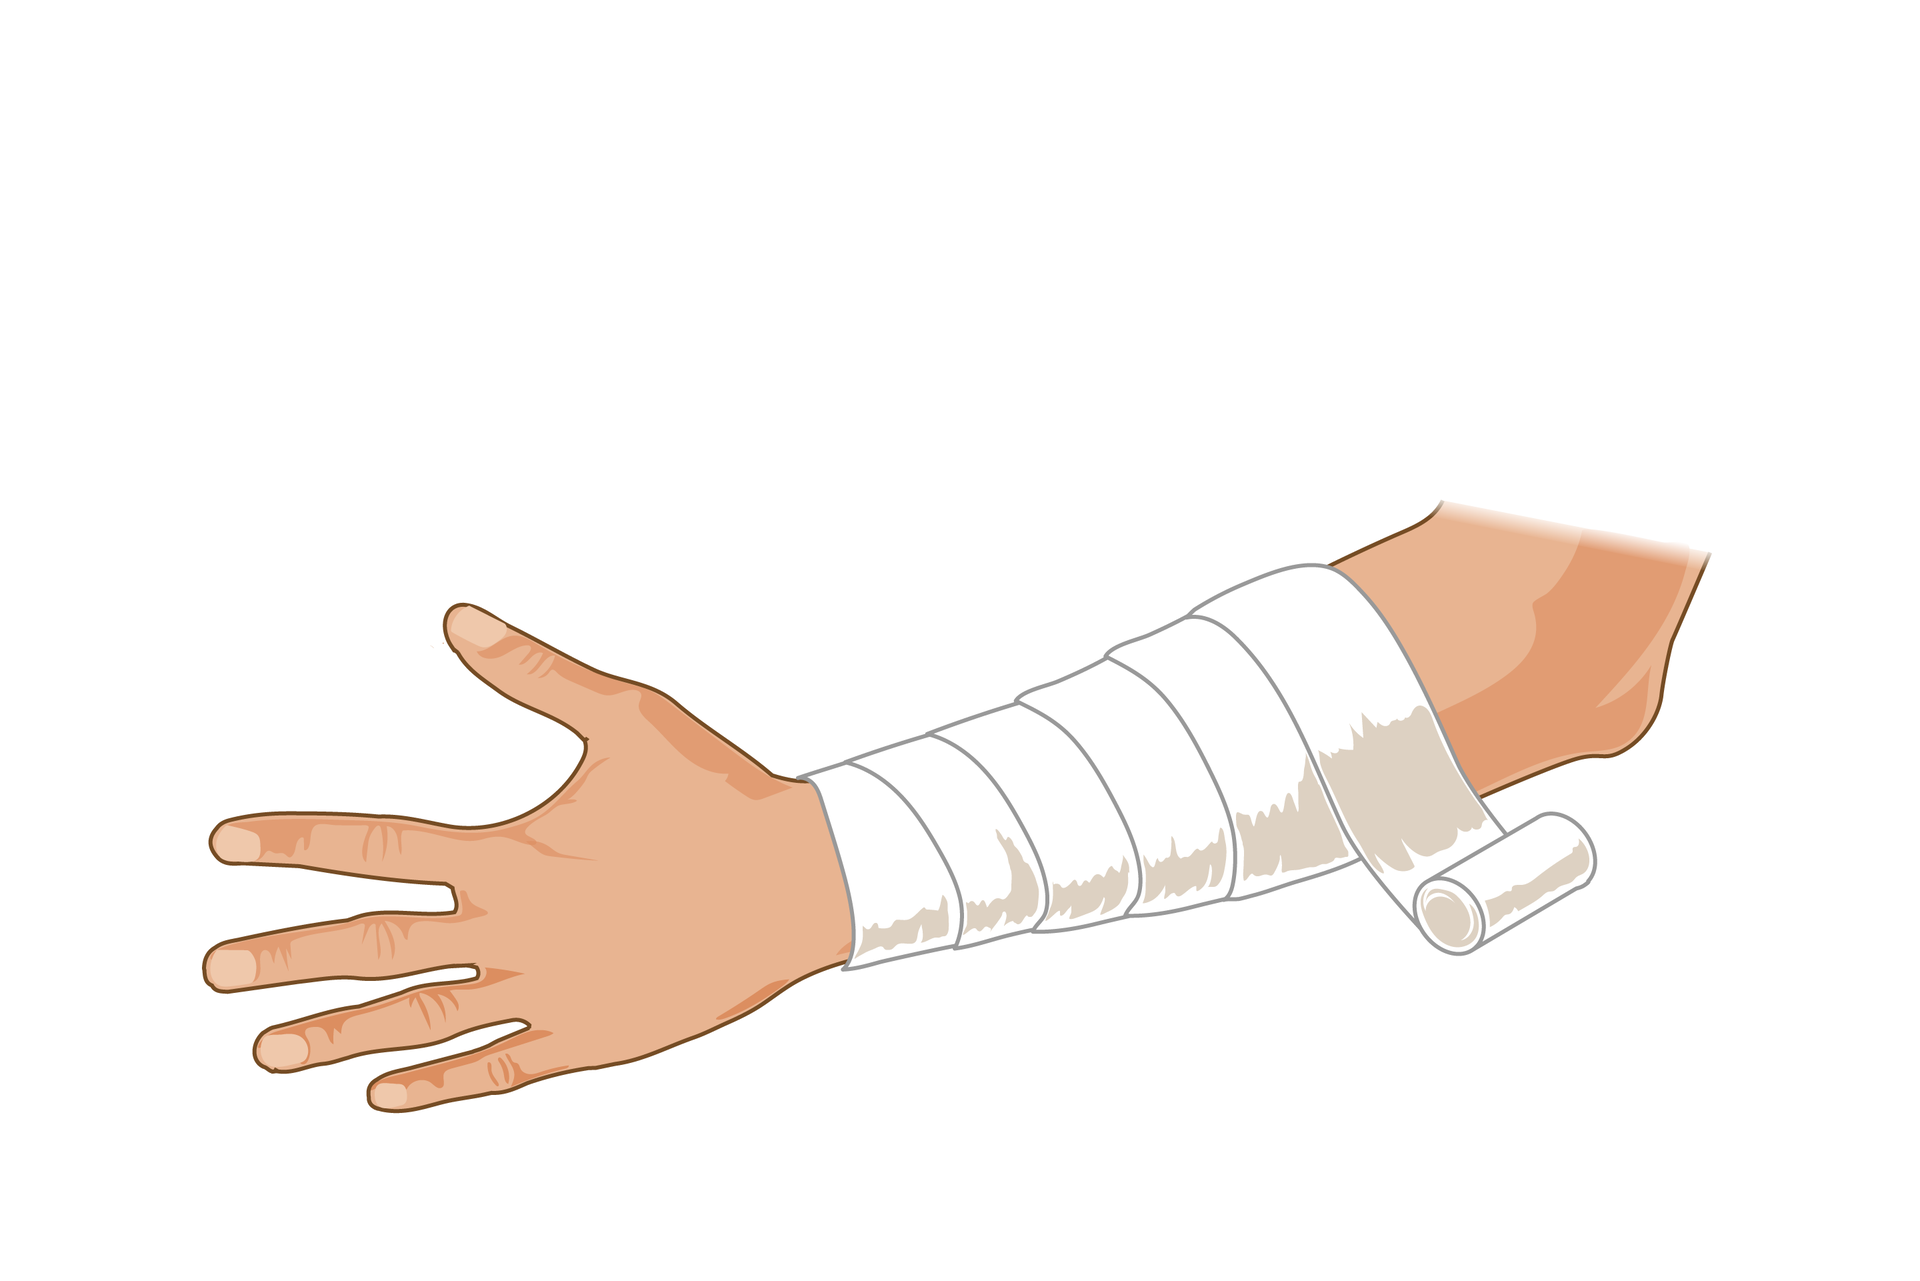 Ilustracja przedstawia zabezpieczanie rany. Lewa ręka ukazana od dłoni z wyprostowanymi palcami po lewej stronie rysunku do łokcia po prawej stronie skierowana jest zewnętrzną stroną do obserwatora. Całe przedramię, od nadgarstka do łokcia jest owinięte białym bandażem. Bandaż nawinięty spiralnie od nadgarstka kończy się w okolicy łokcia rolką.